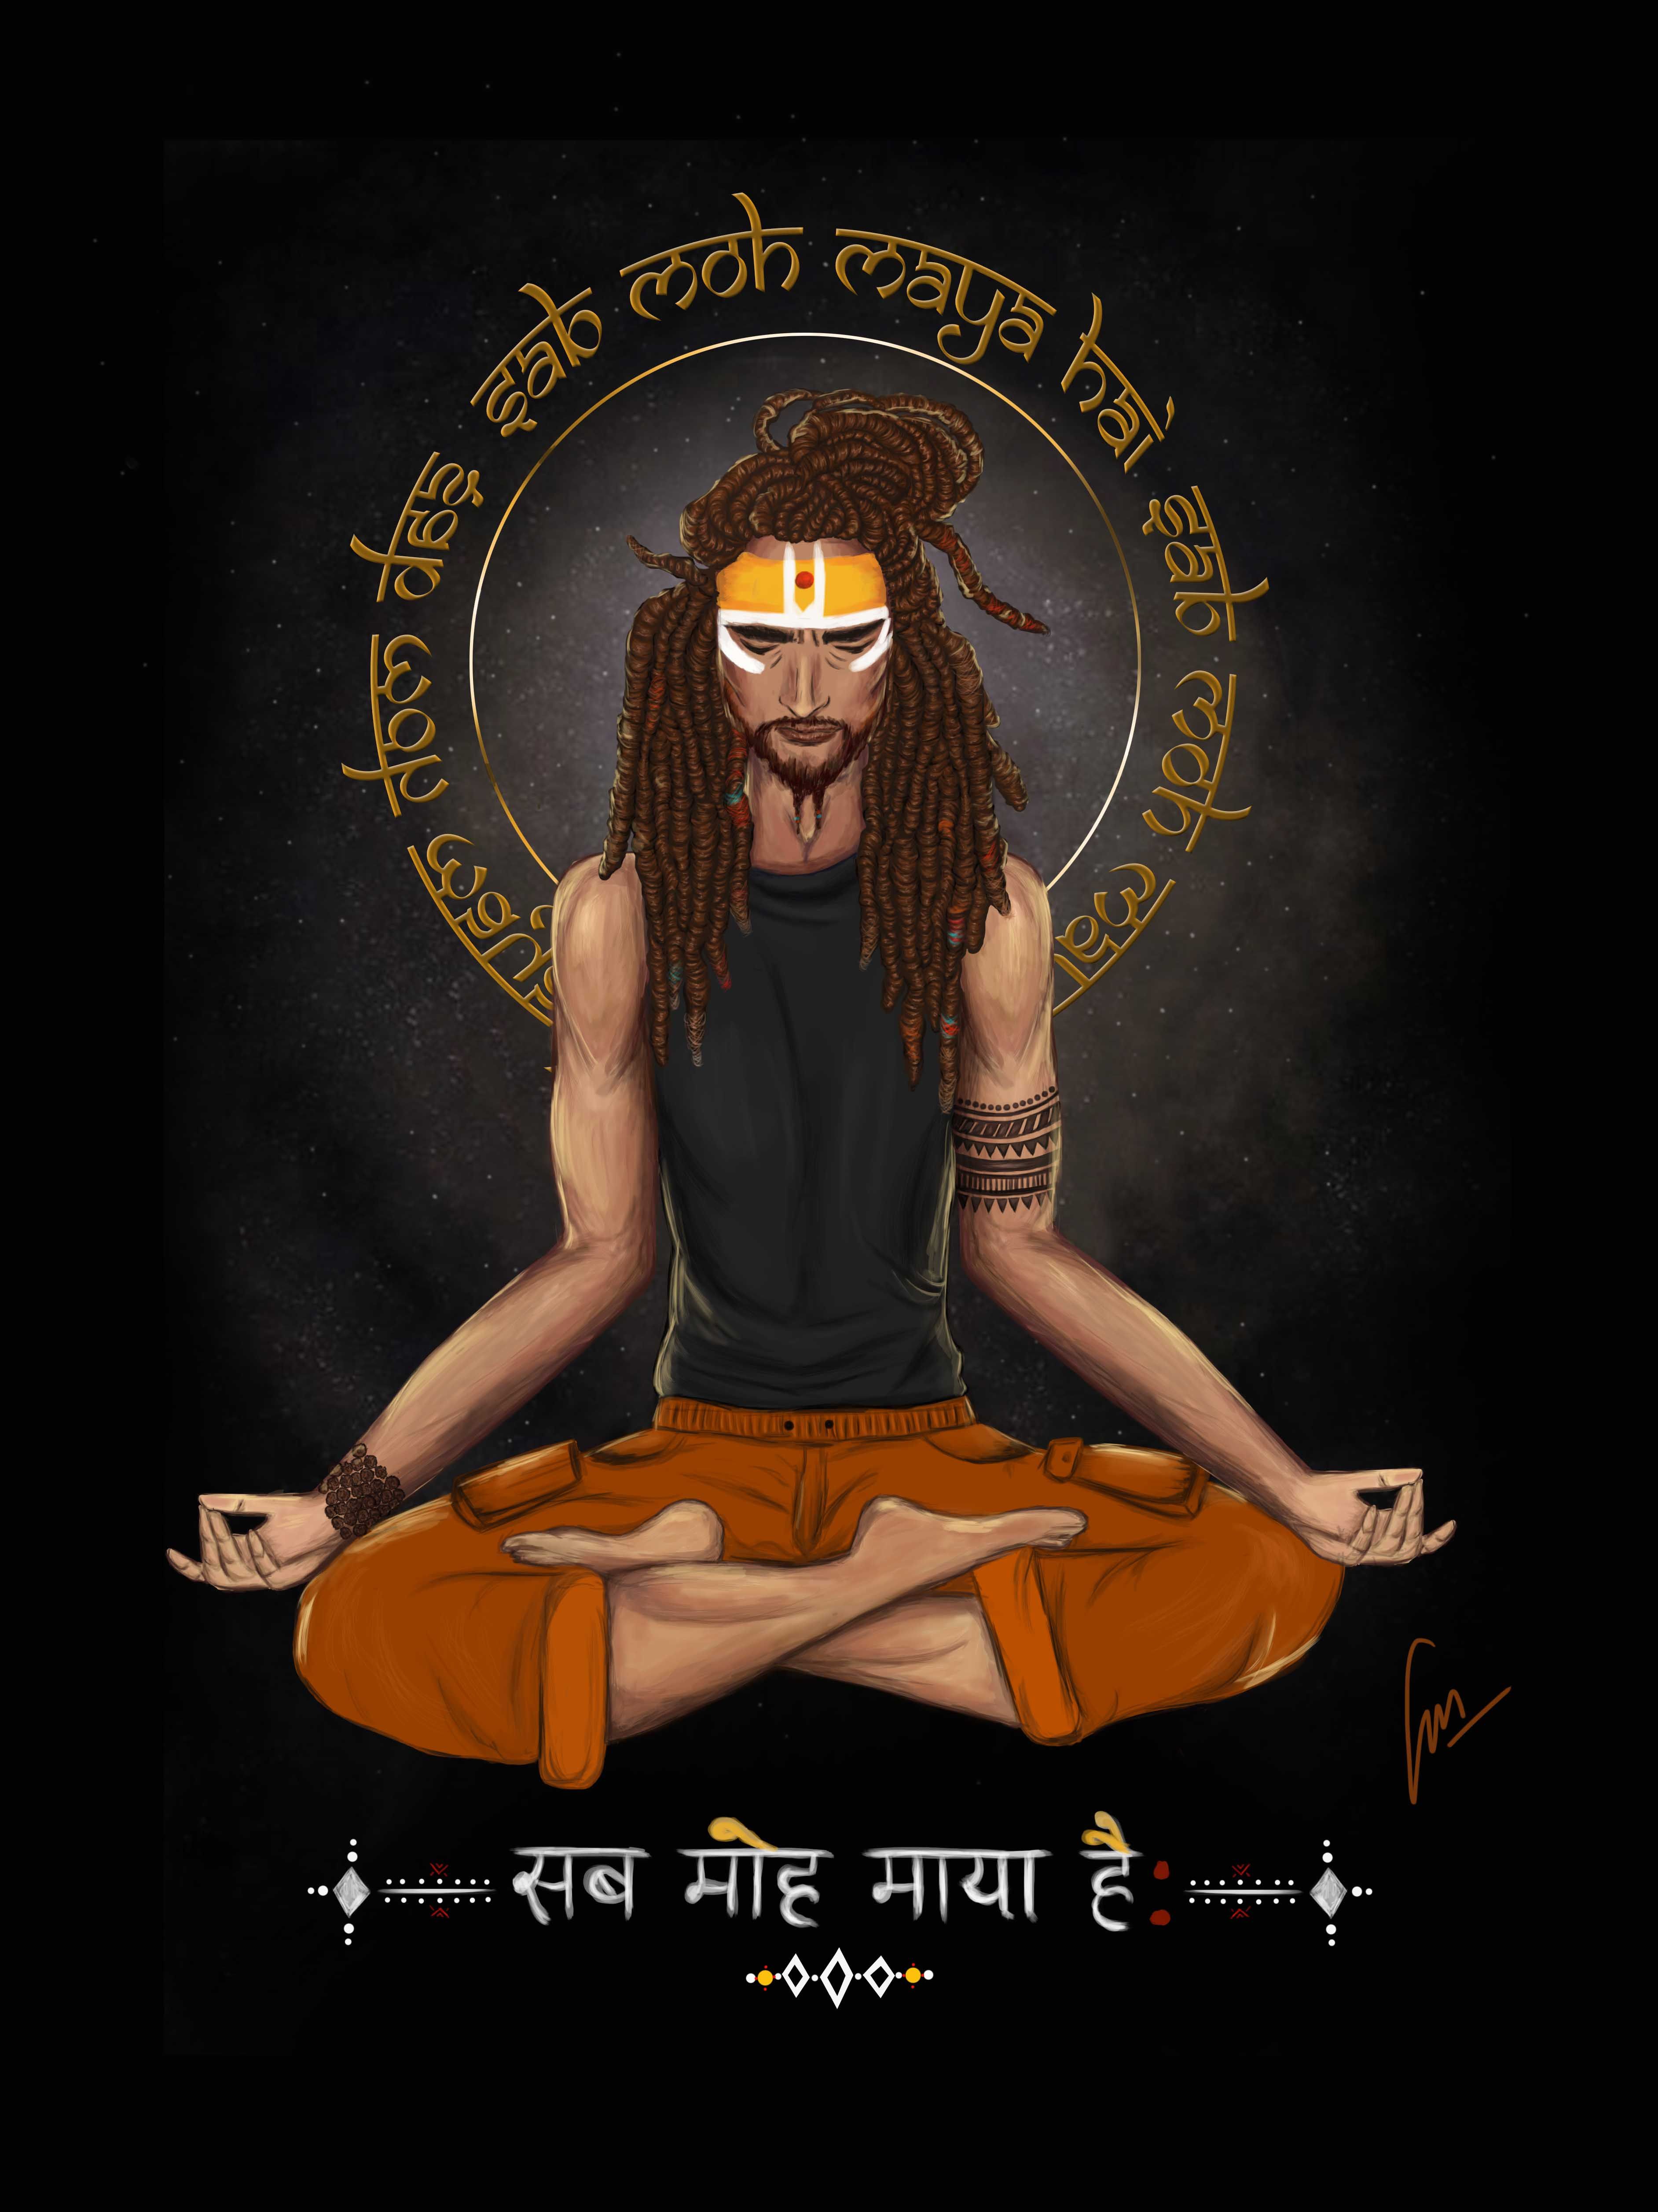 sab moh maya hai by jagriti mishra. Shiva art, Art, Cartoon